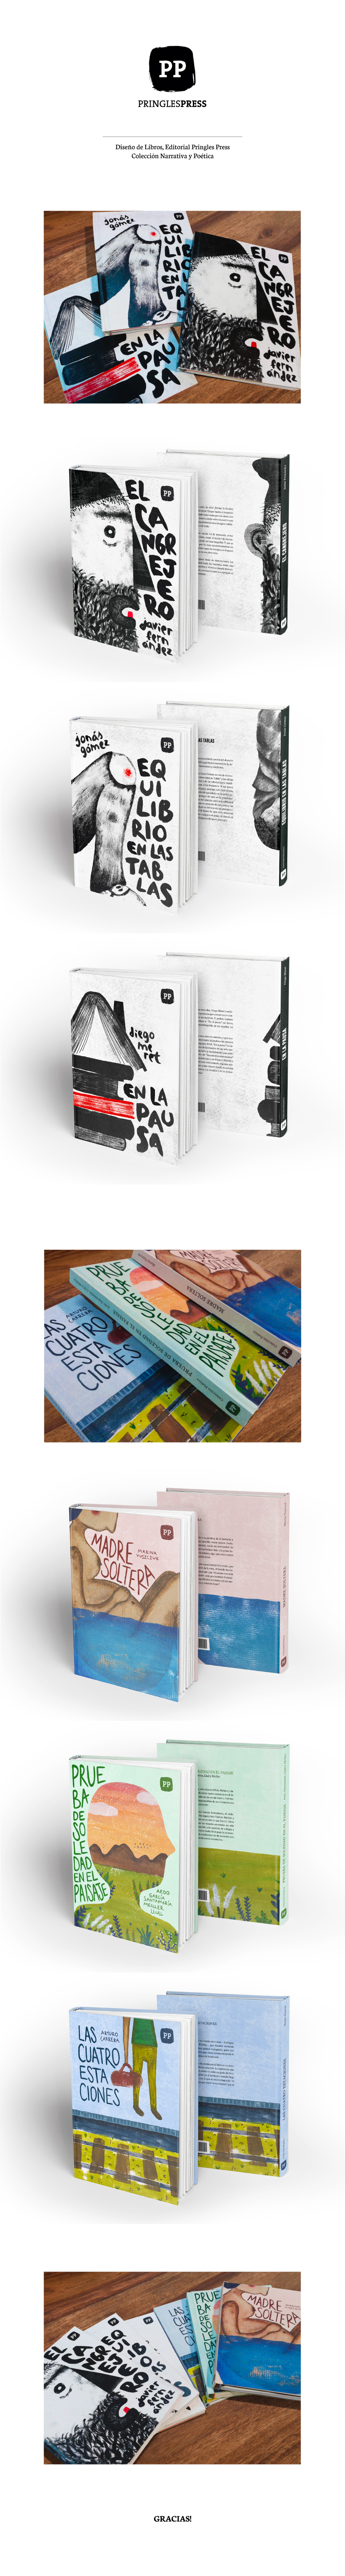 book colección Collection tapas libros rico diseño gráfico fadu uba ilustracion de tapas book cover